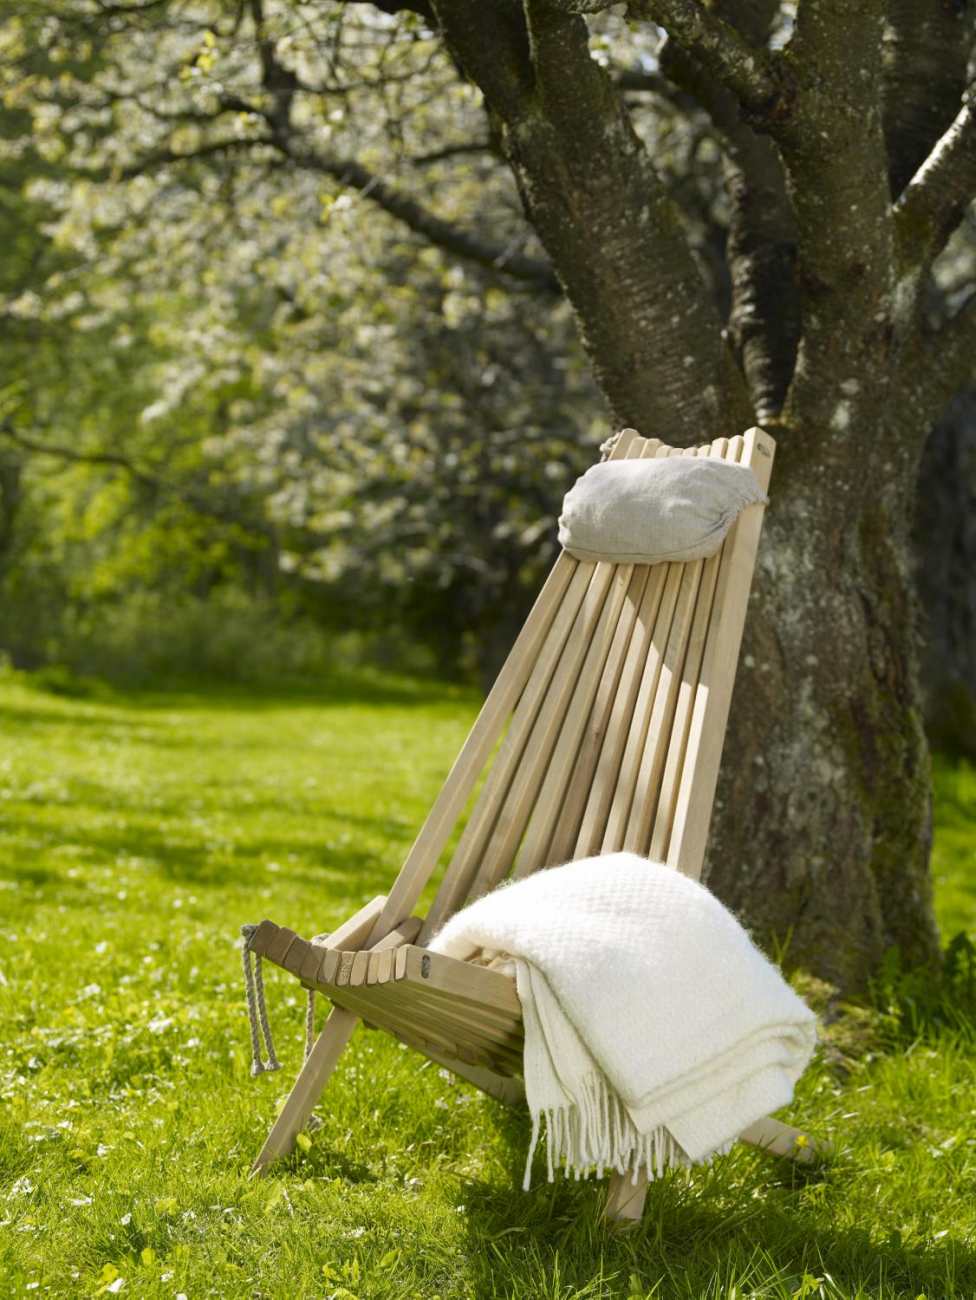 Der Gartenstuhl Ribbon überzeugt mit seinem modernen Design. Gefertigt wurde er aus Buchenholz, welcher einen natürlichen Farbton besitzt. Das Gestell ist auch aus Buchenholz und hat eine natürliche Farbe. Die Sitzhöhe des Stuhls beträgt 43 cm.